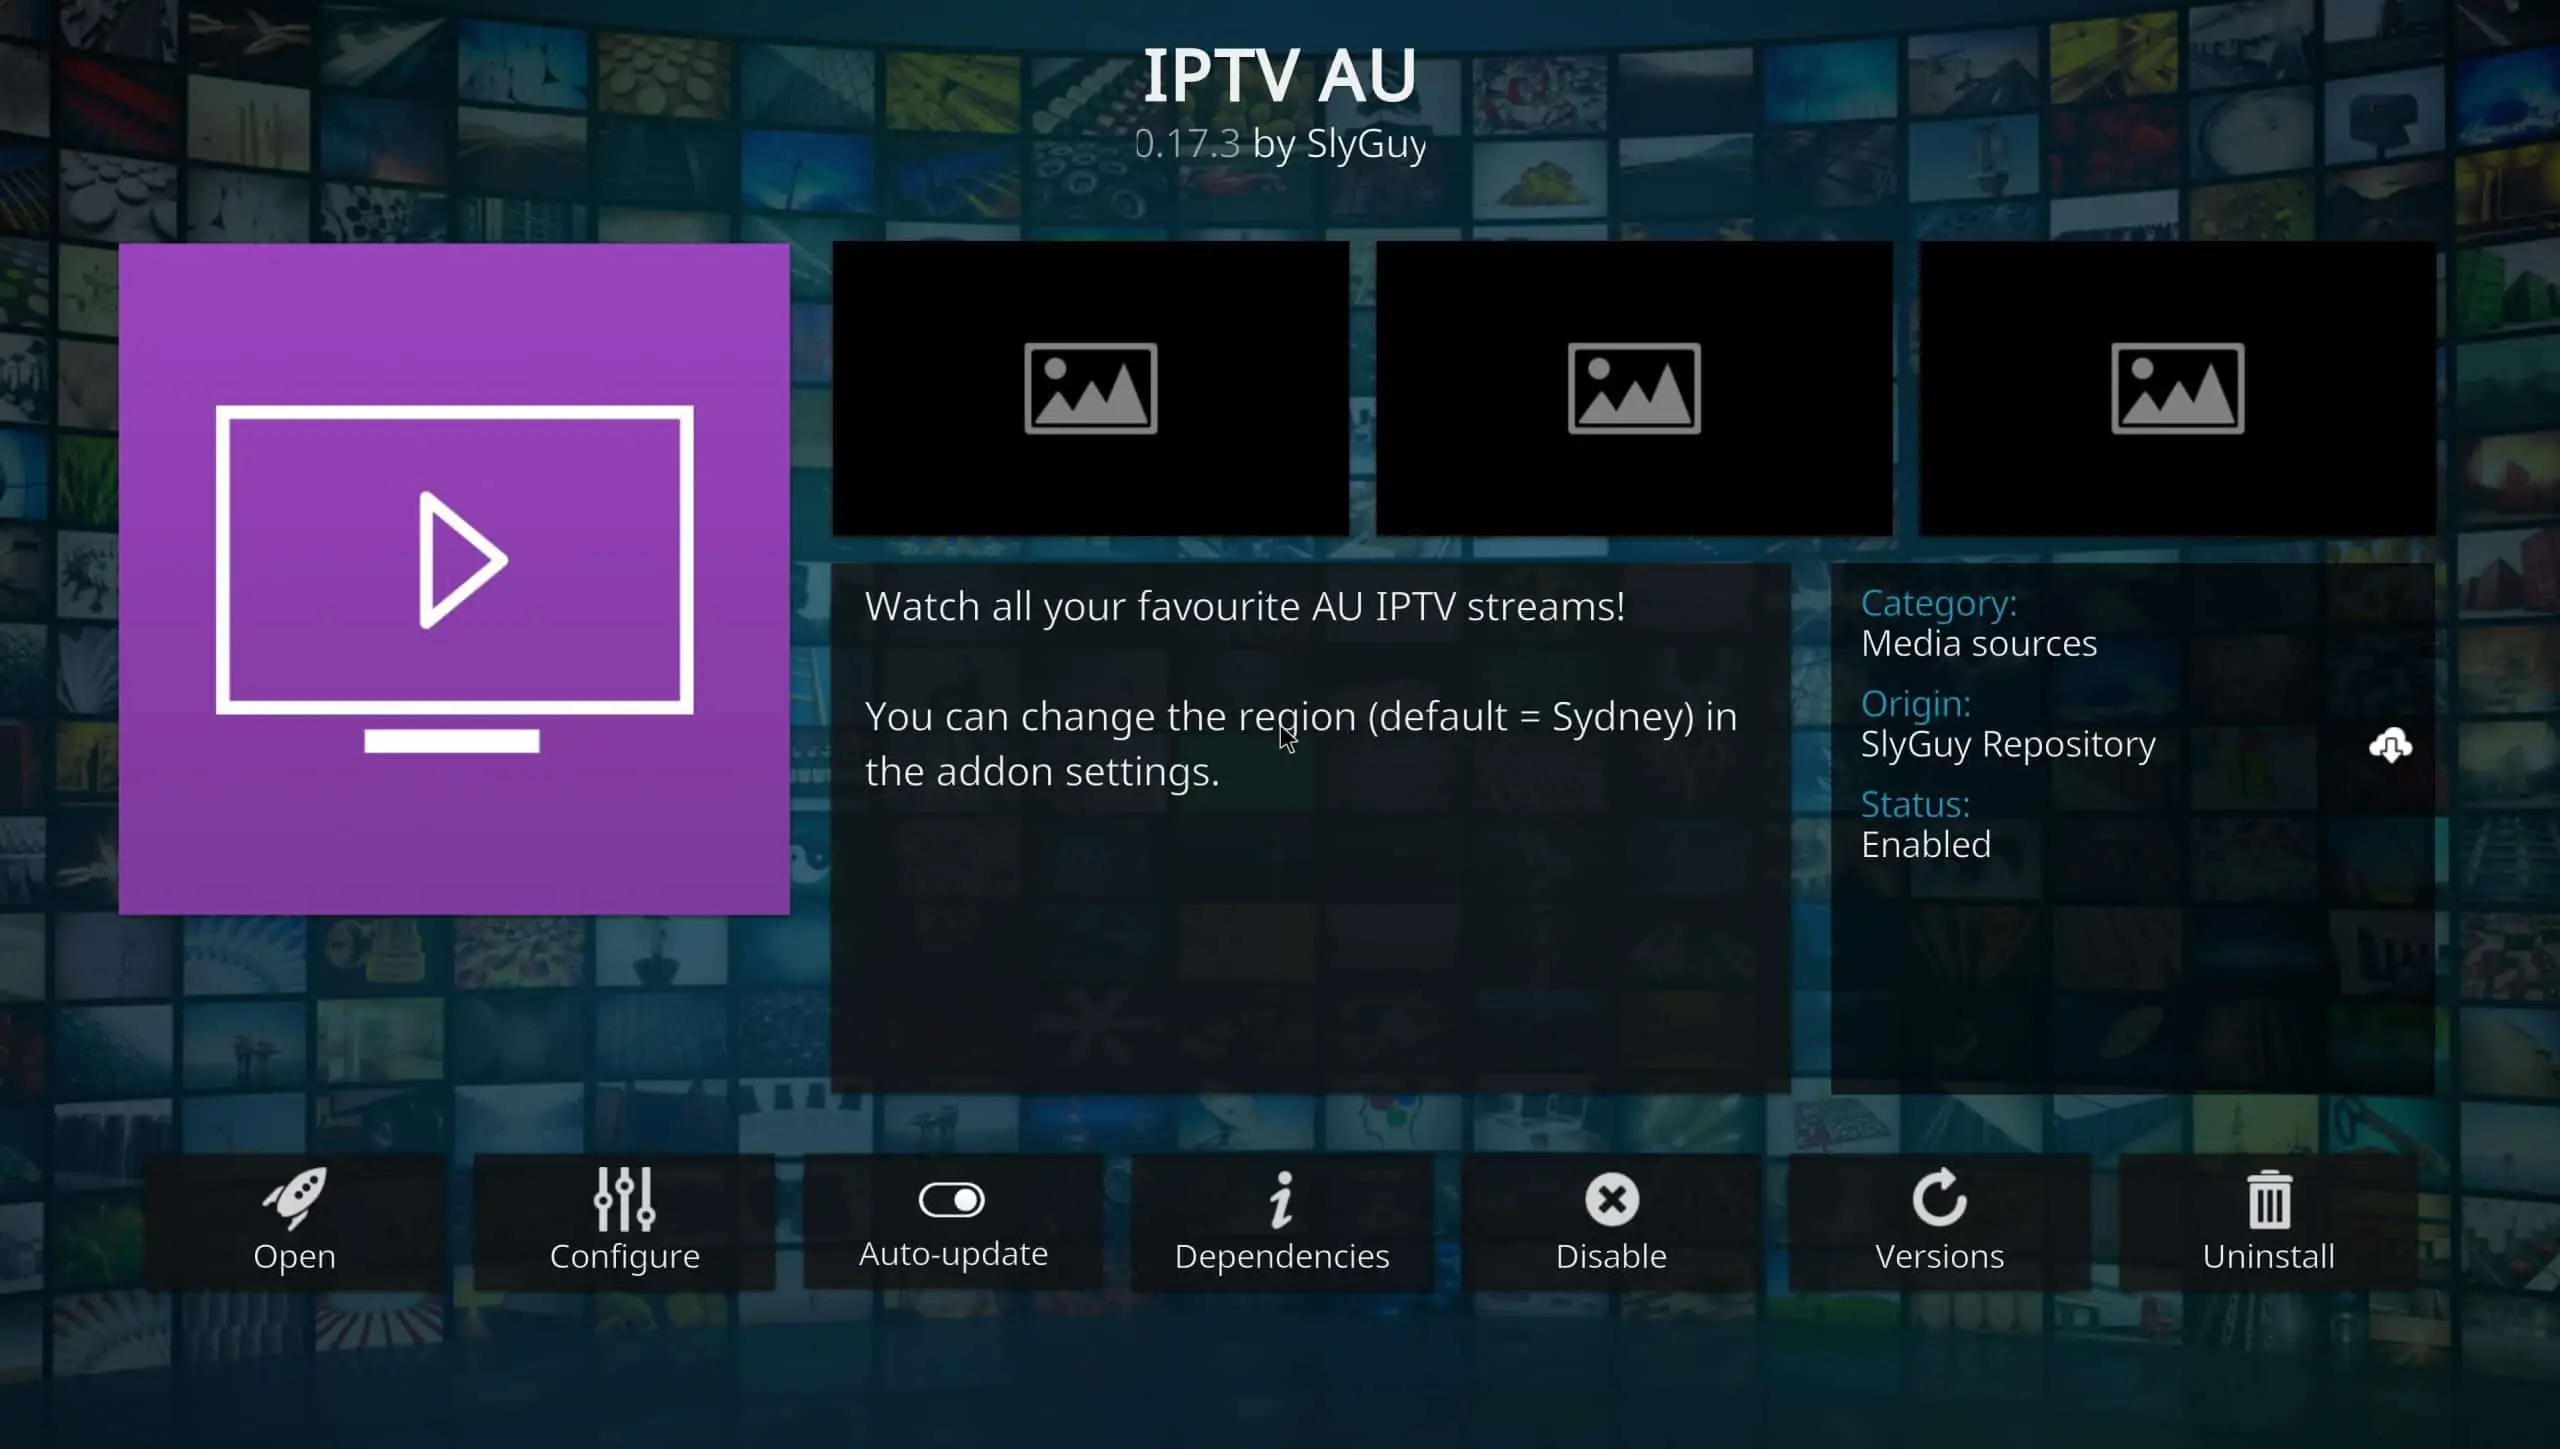 IPTV AU kodi addon